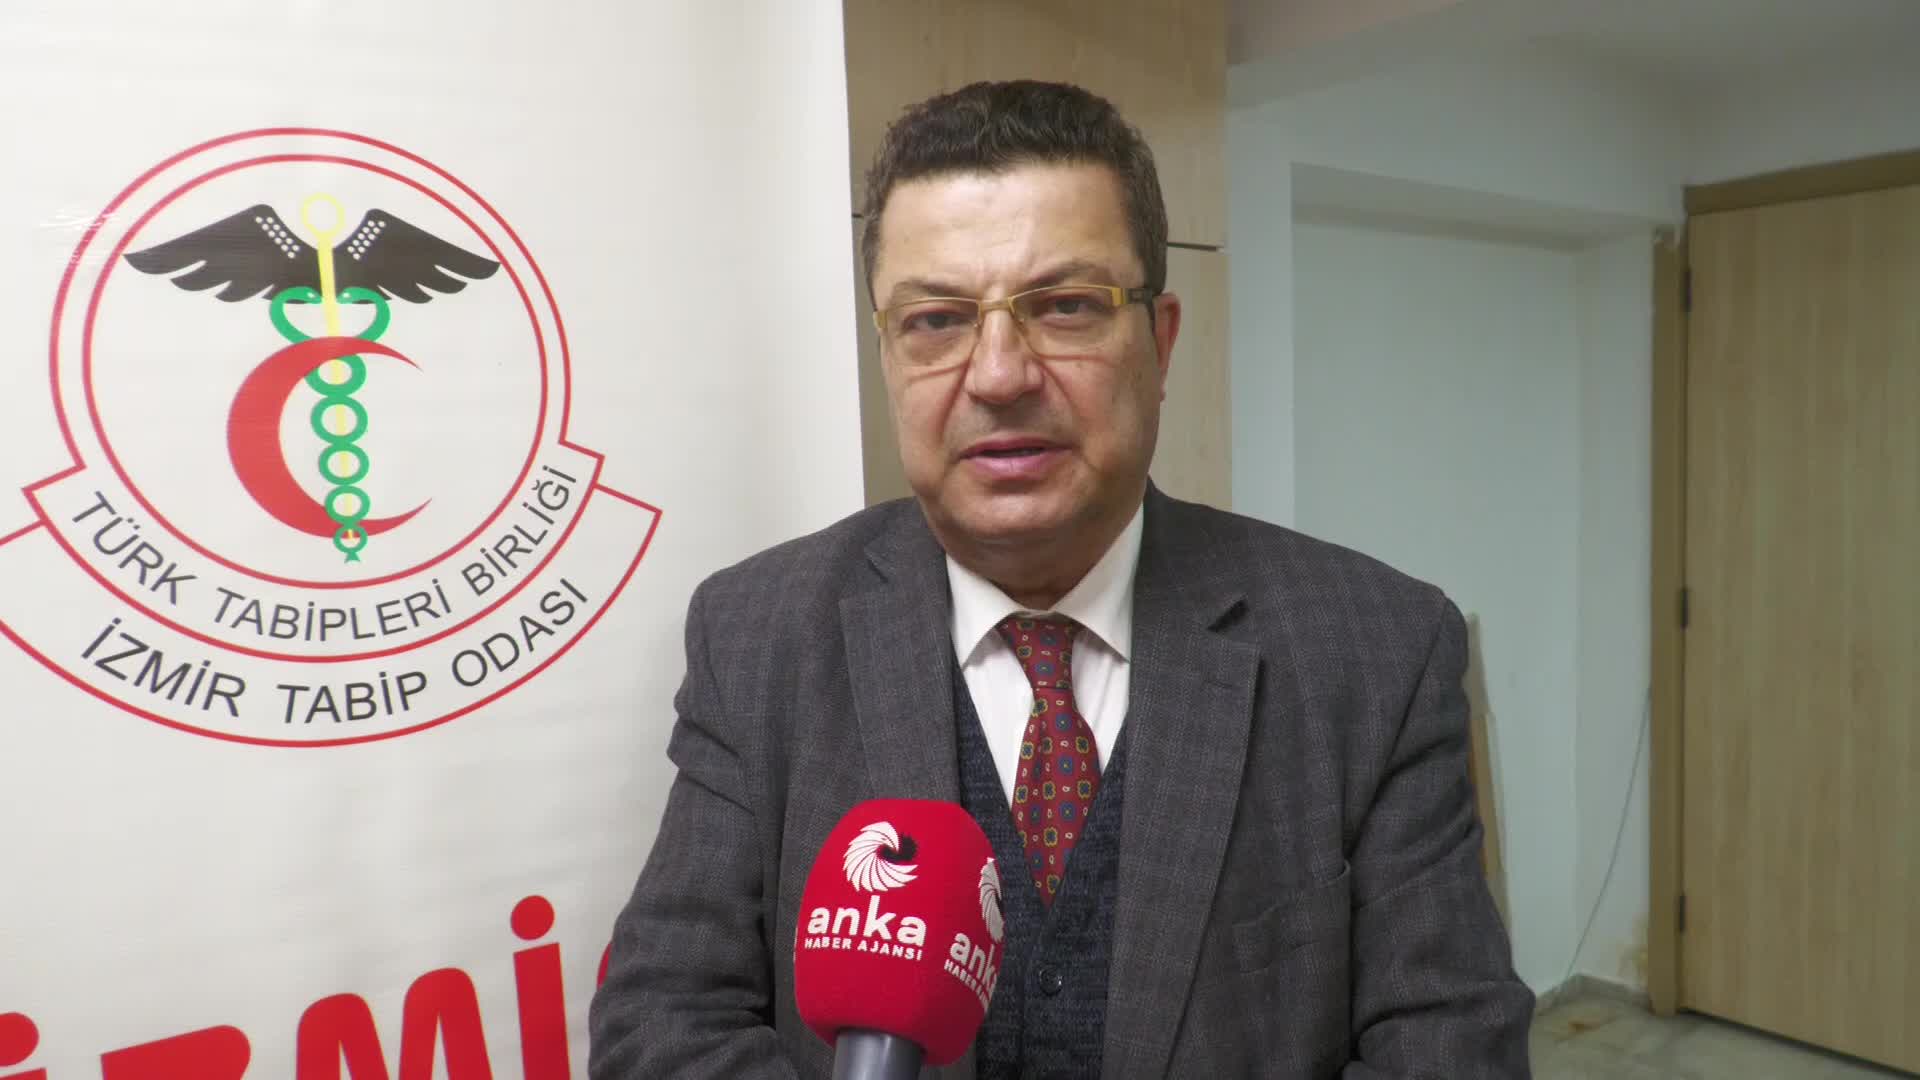 İzmir Tabip Odası Başkanı Kaynak: En üst düzeyden cezalarla bu saldırganlar durdurulabilir